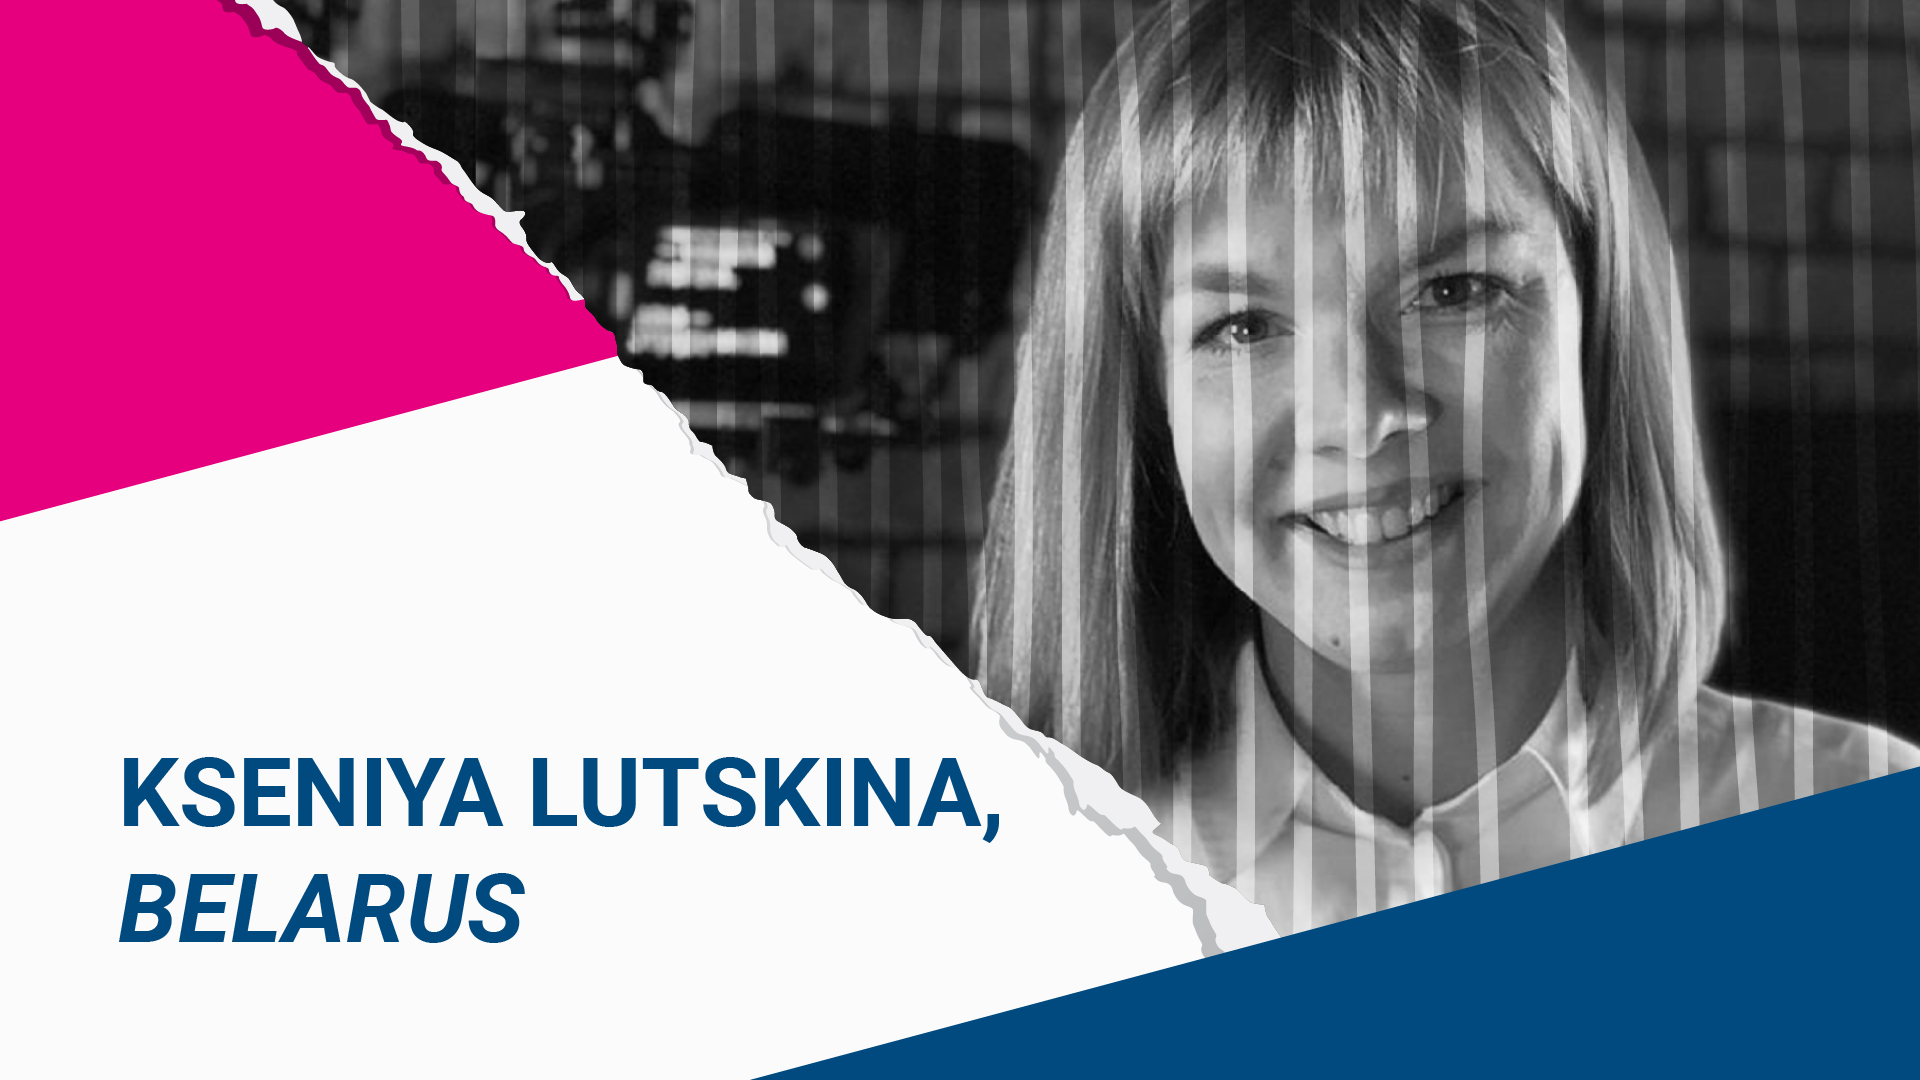 Ksenia Lutskina, Prisoner of Conscience